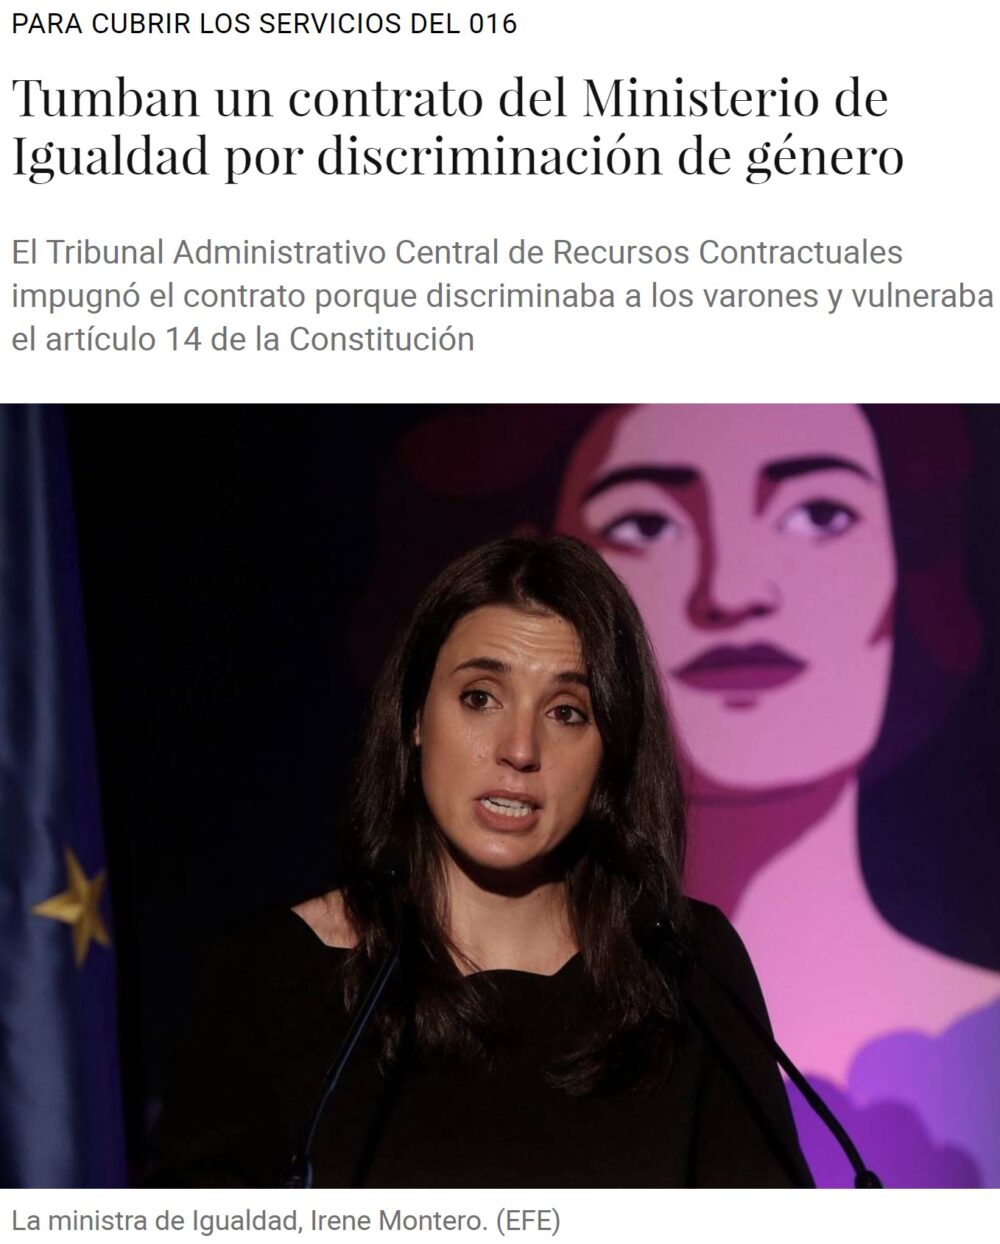 Tumban un contrato del MINISTERIO DE IGUALDAD por vulnerar el artículo 14 de la constitución, en el que se dice que todos los españoles somos IGUALES ANTE LA LEY